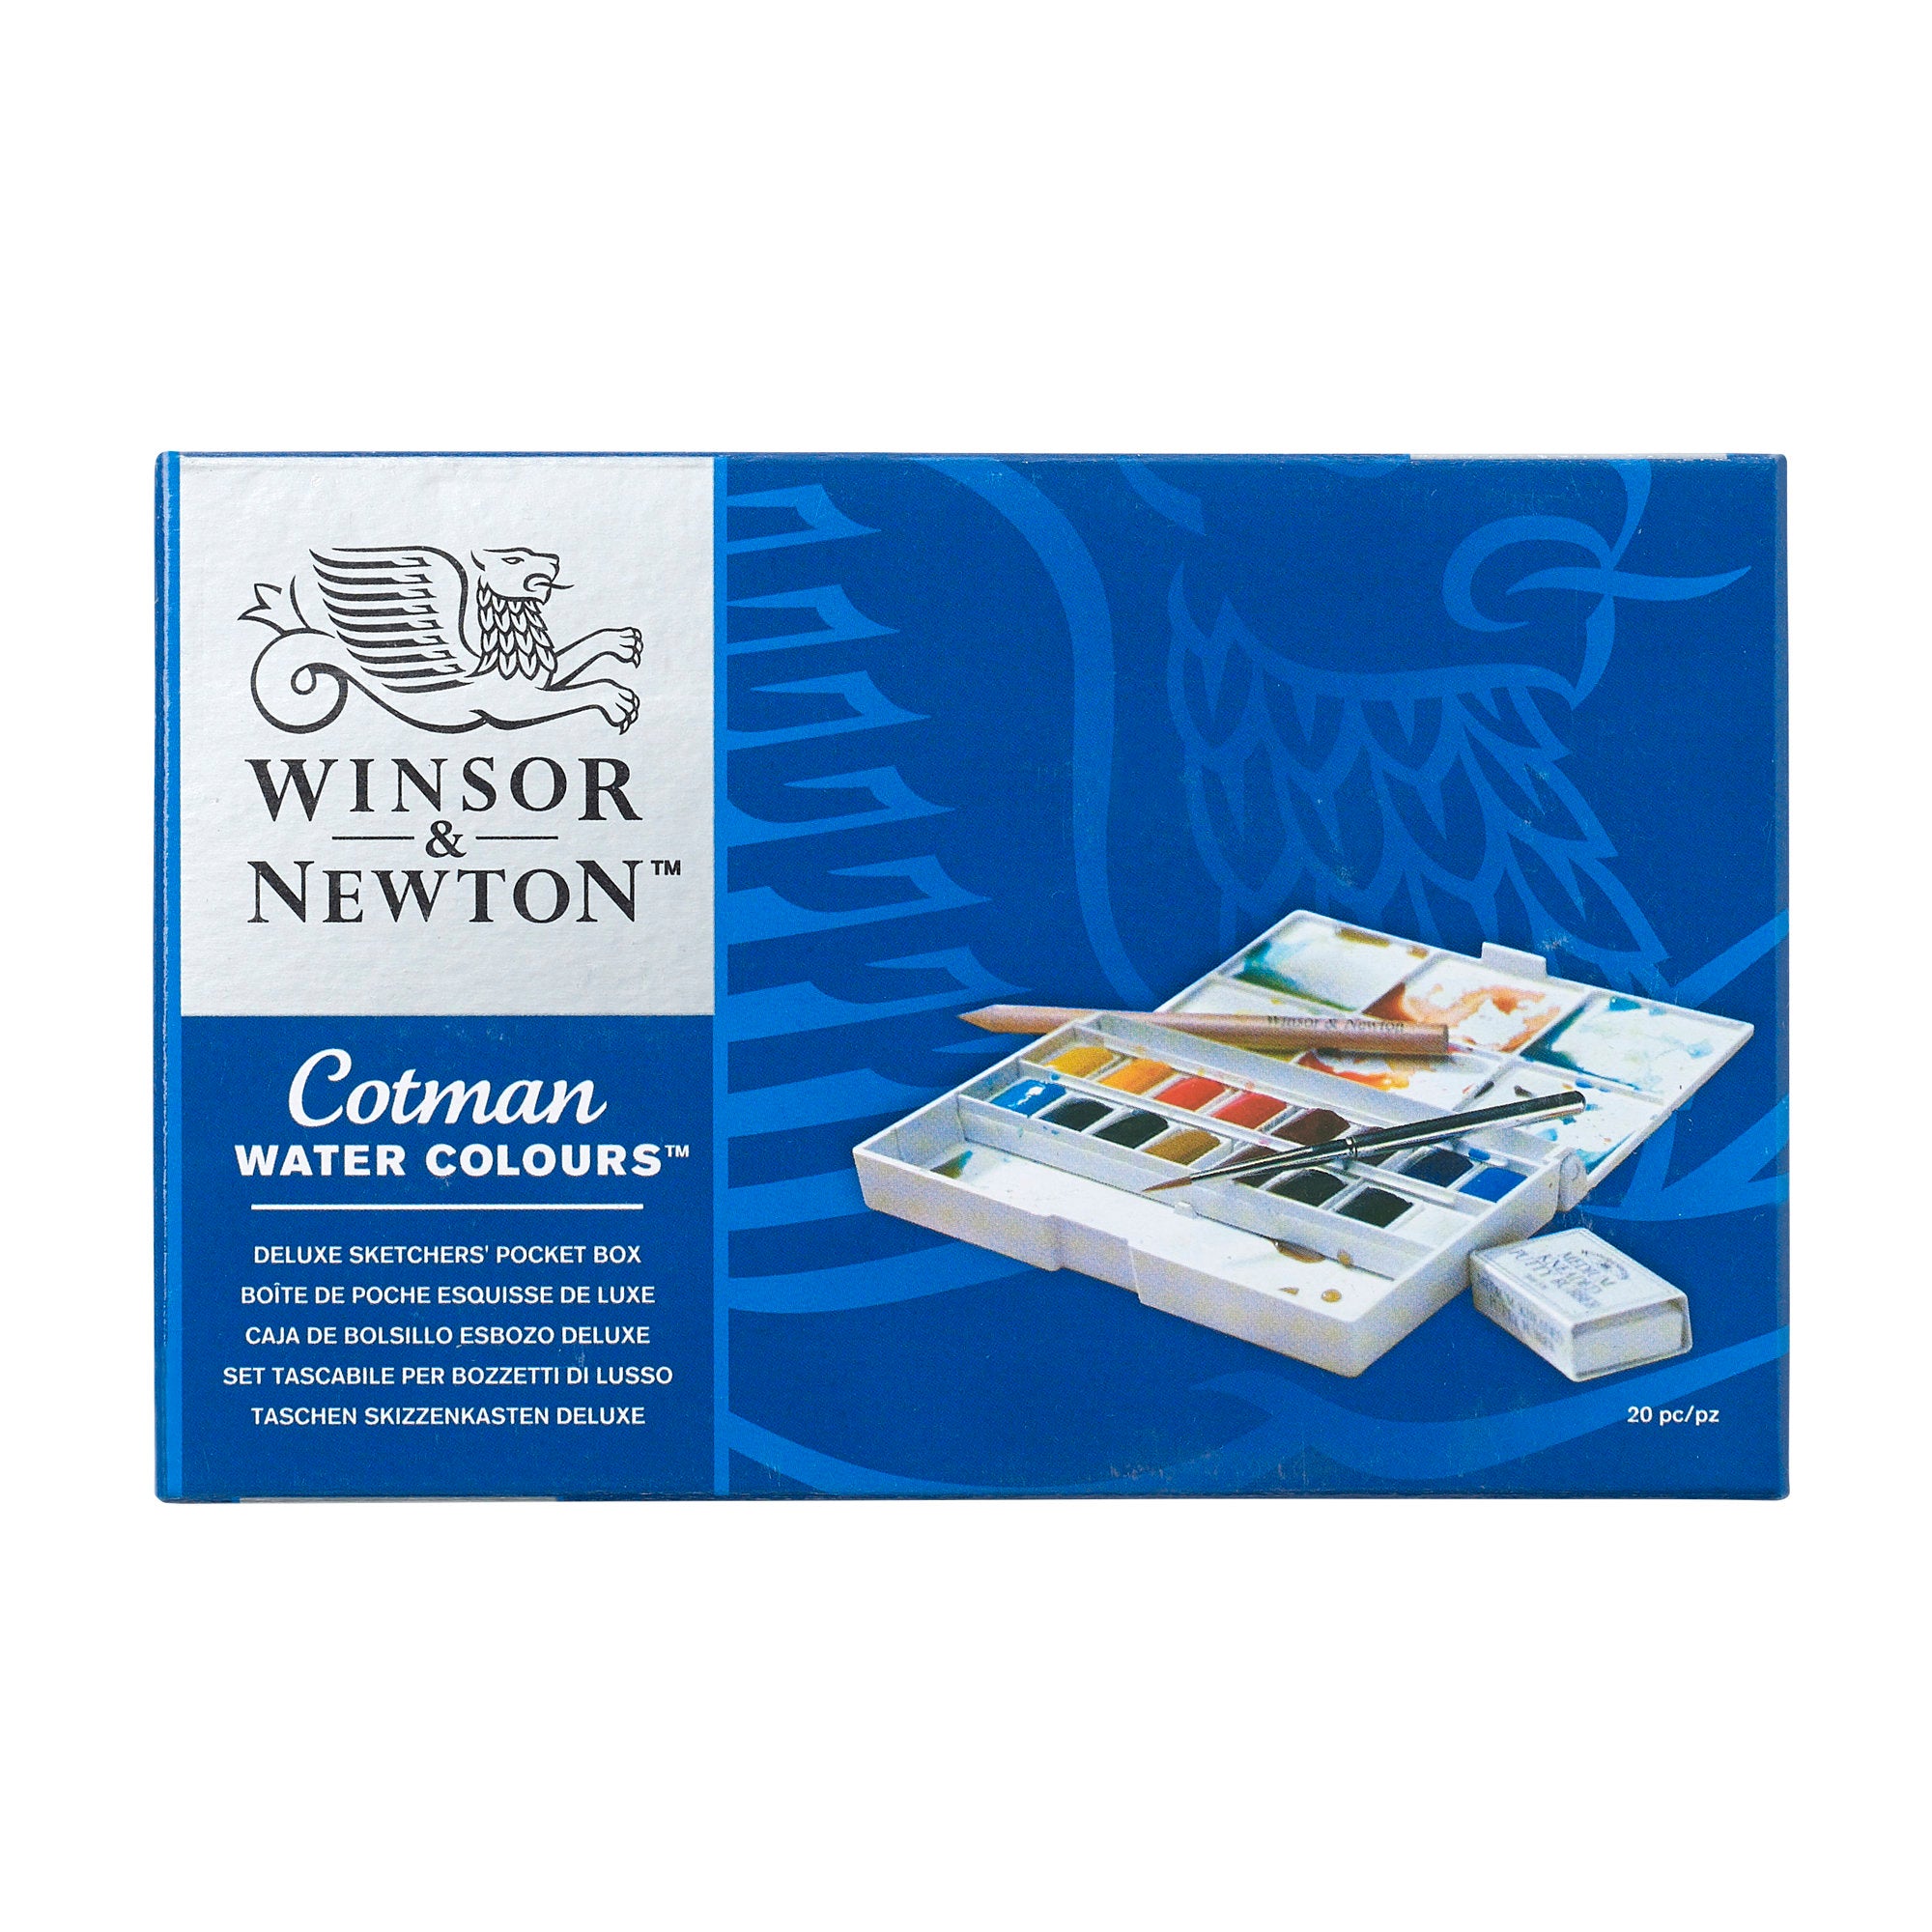 Winsor & Newton Cotman Deluxe Sketchers Pocket Box